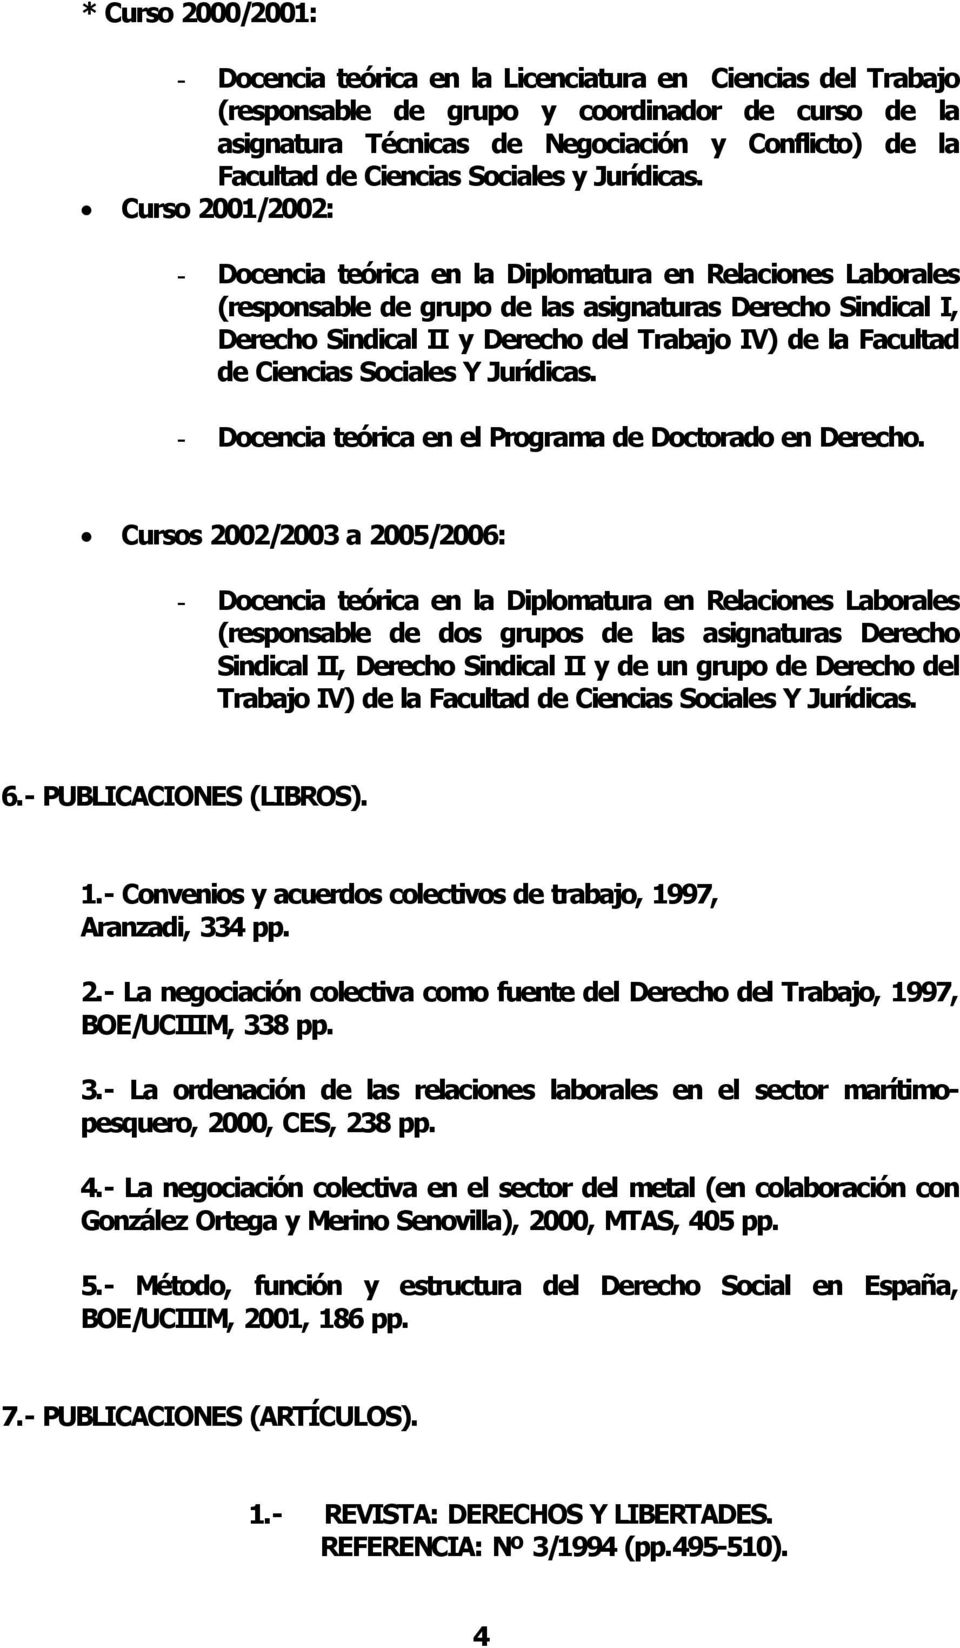 Curso 2001/2002: Docencia teórica en la Diplomatura en Relaciones Laborales (responsable de grupo de las asignaturas Derecho Sindical I, Derecho Sindical II y Derecho del Trabajo IV) de la Facultad